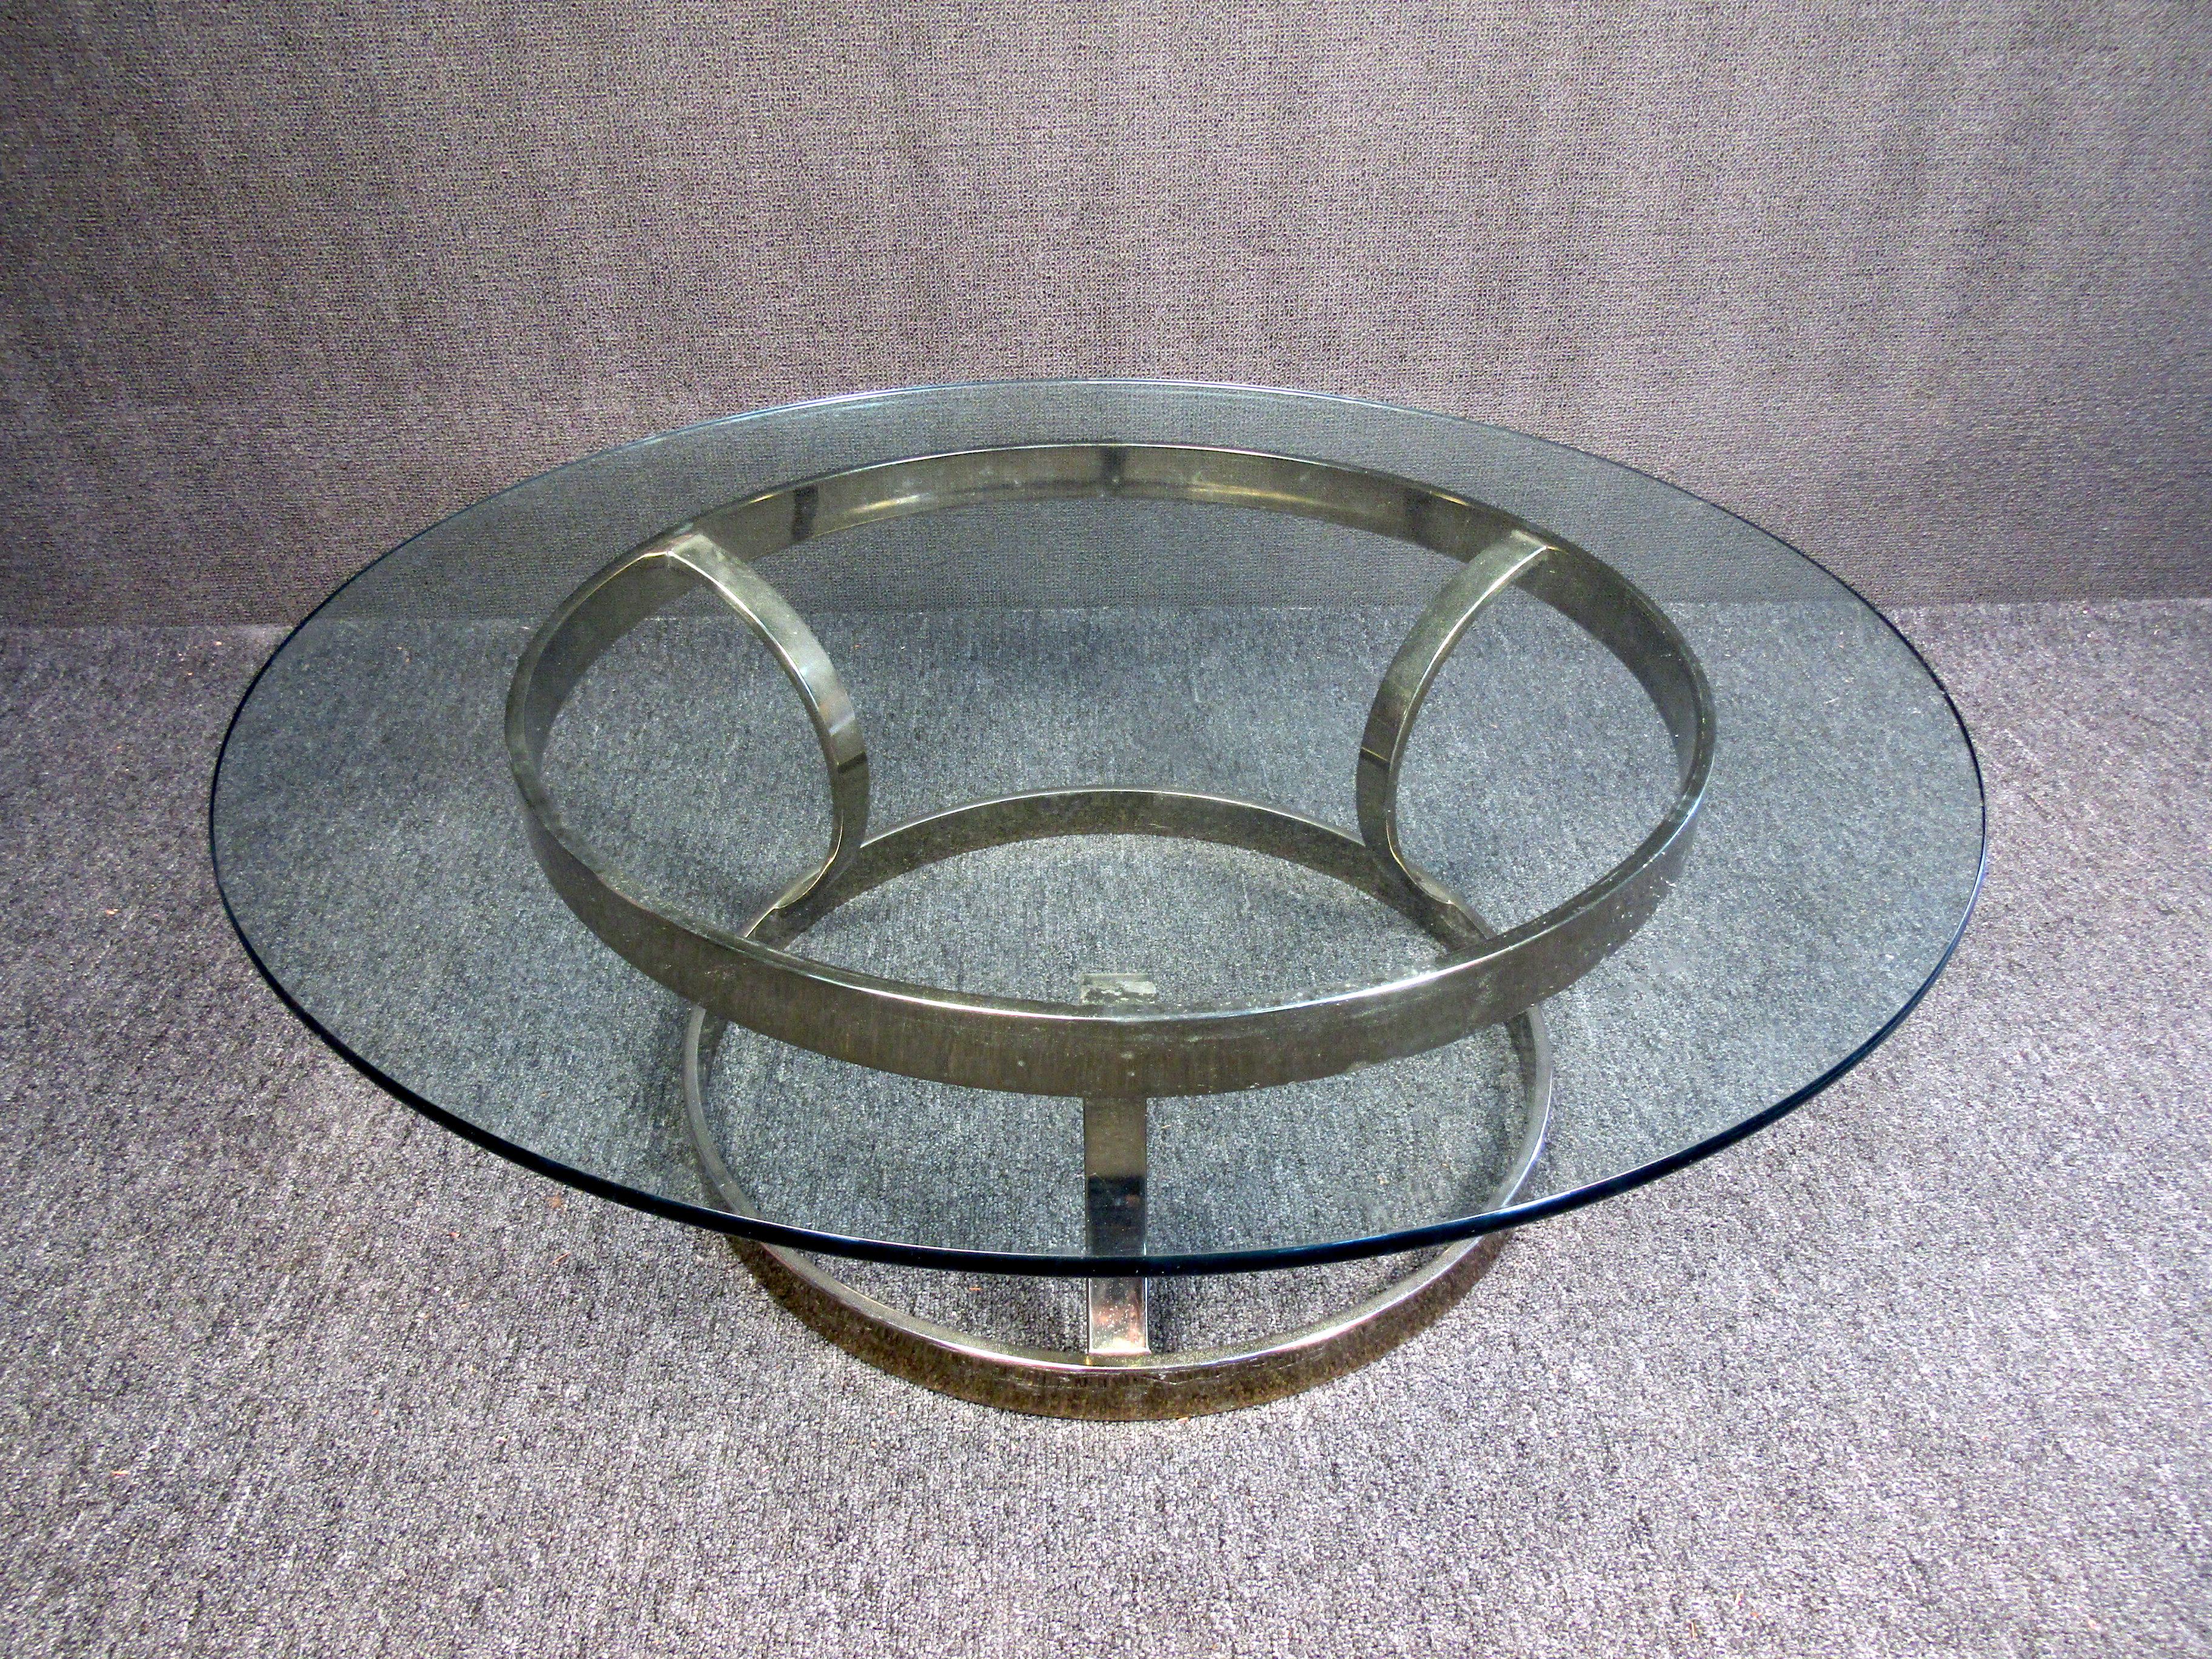 Dieser Couchtisch im Vintage-Stil zeigt einen strahlenden Messingbass durch seine klare Glasplatte. Dieser stilvolle und robuste Mid-Century Modern-Tisch eignet sich perfekt, um in Gesellschaft einen Kaffee oder ein Getränk zu genießen. Bitte